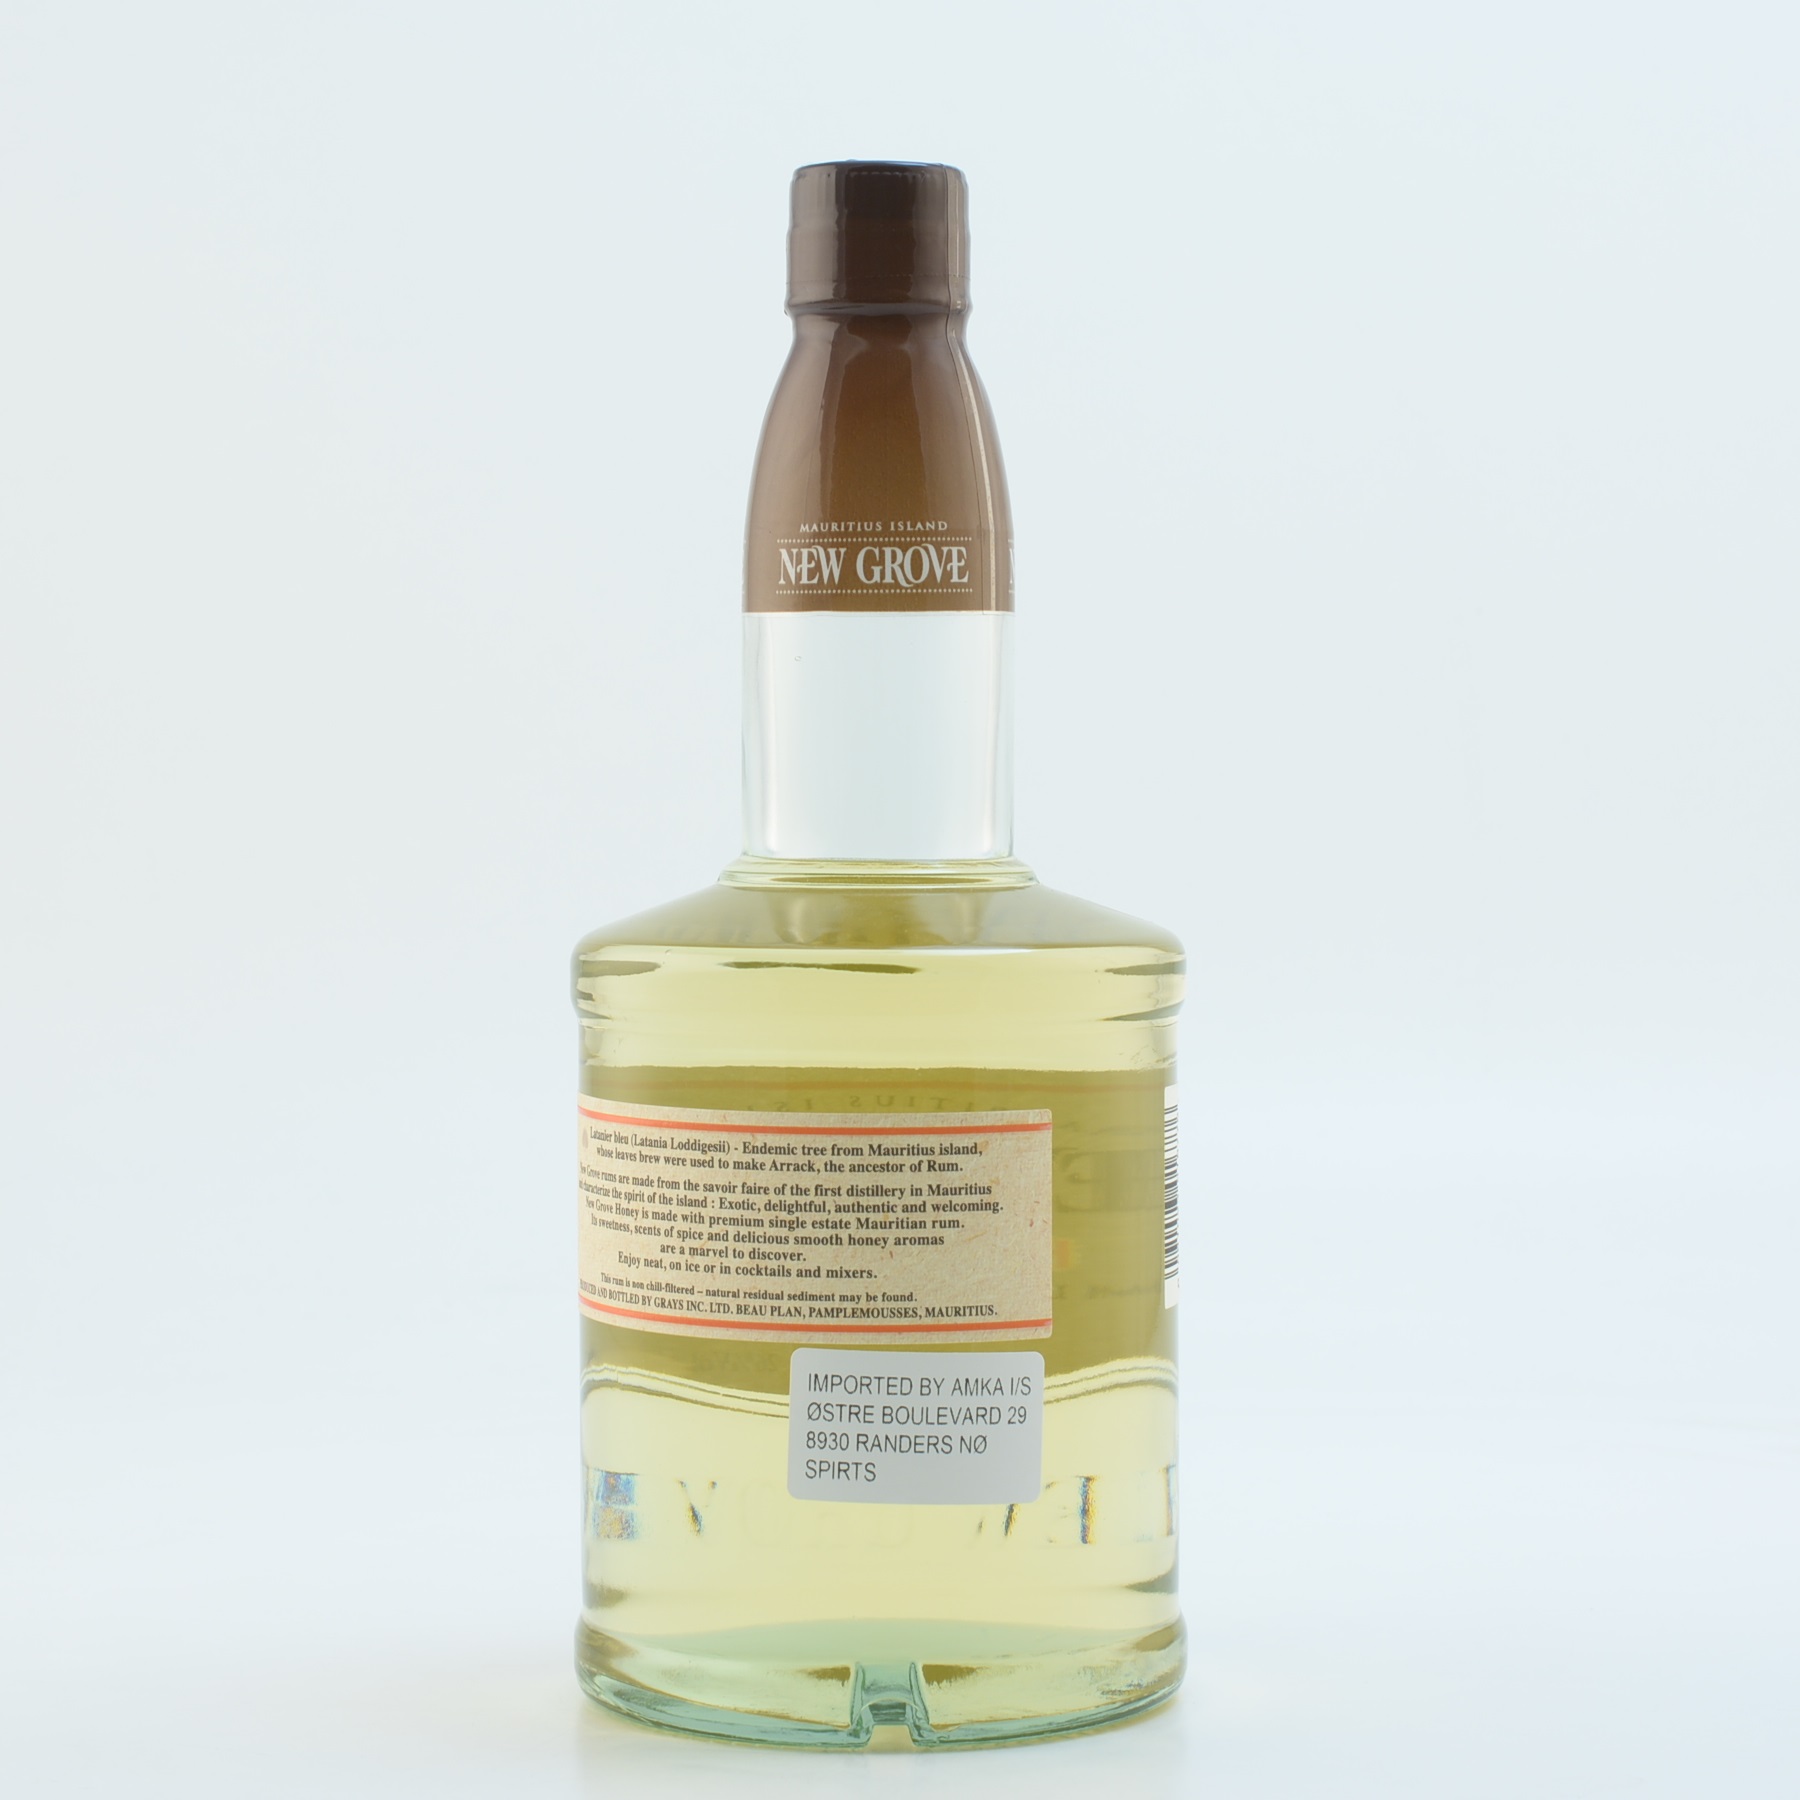 New Grove Honey Liqueur of Mauritius (Rum) 26% 0,7l